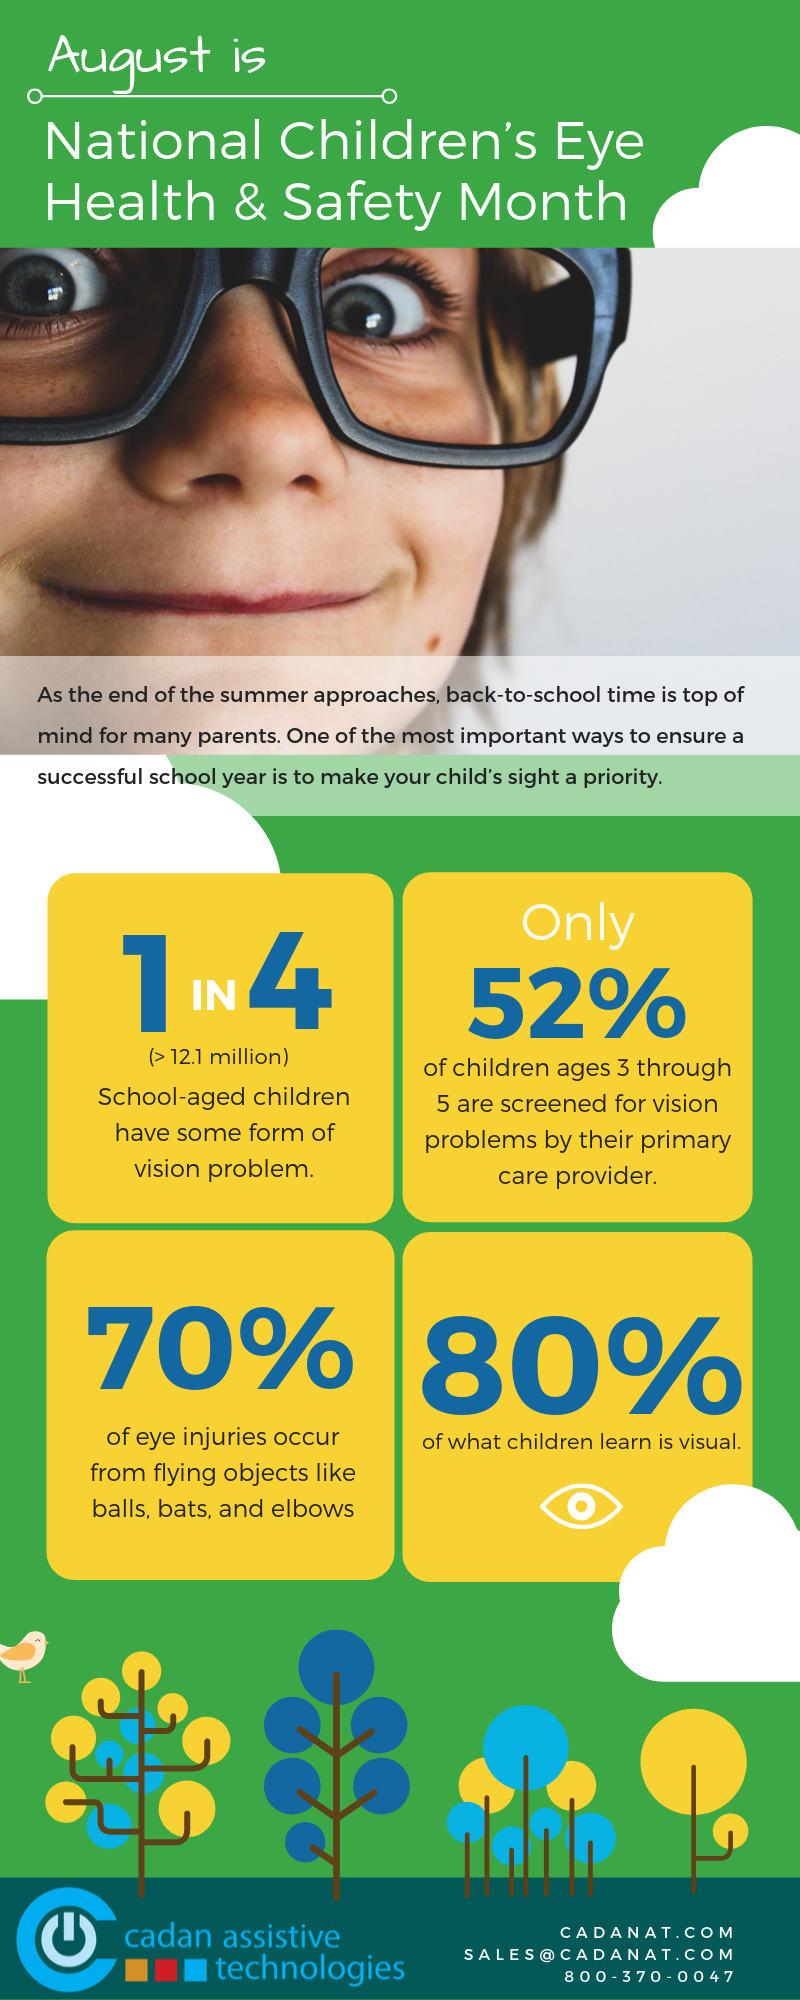 August - National Children’s Eye Health & Safety Month